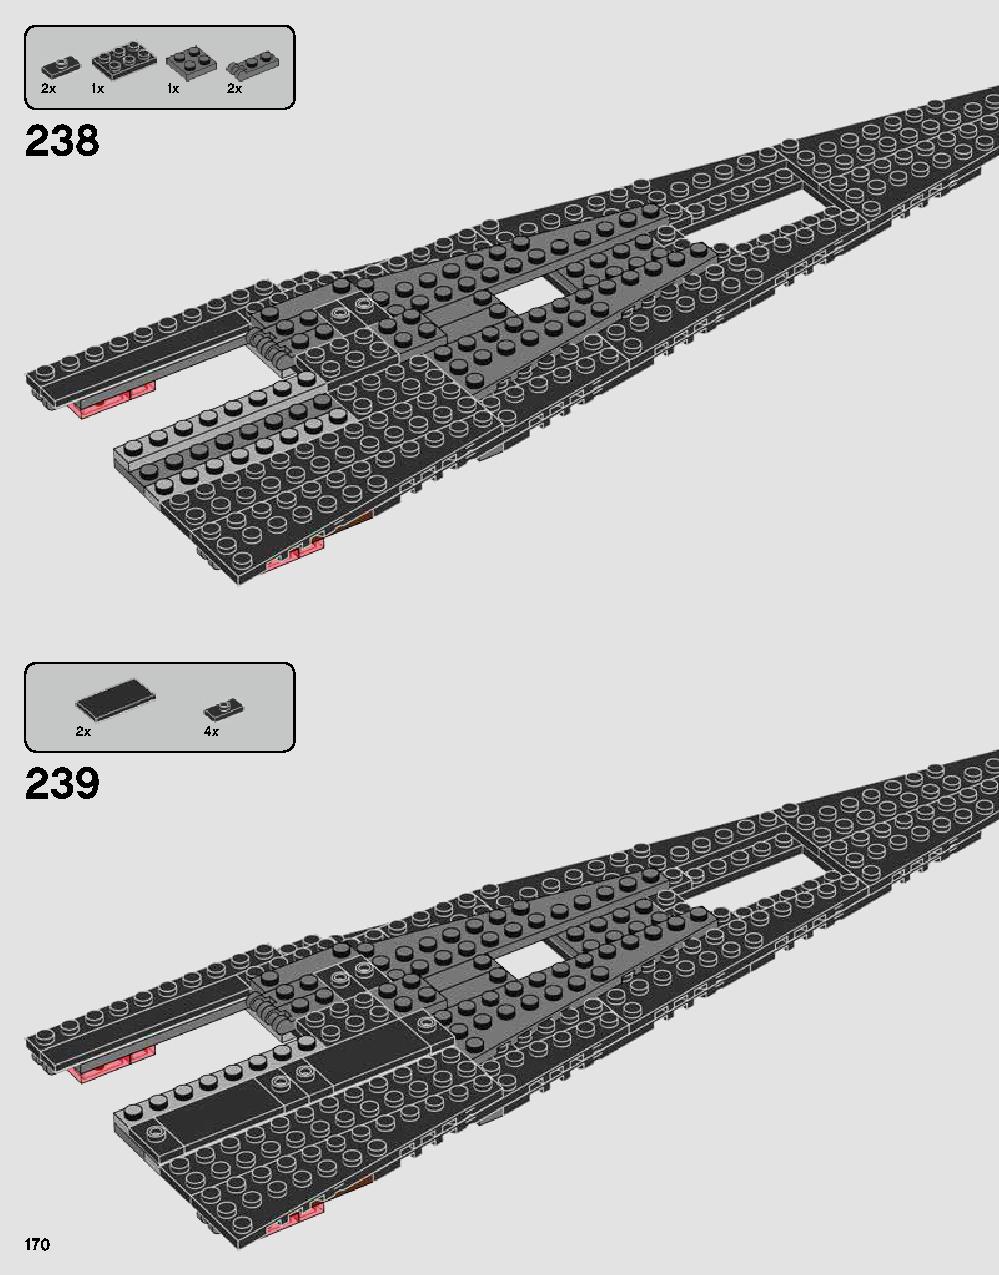 스타워즈 다스베이더 캐슬 75251 레고 세트 제품정보 레고 조립설명서 170 page